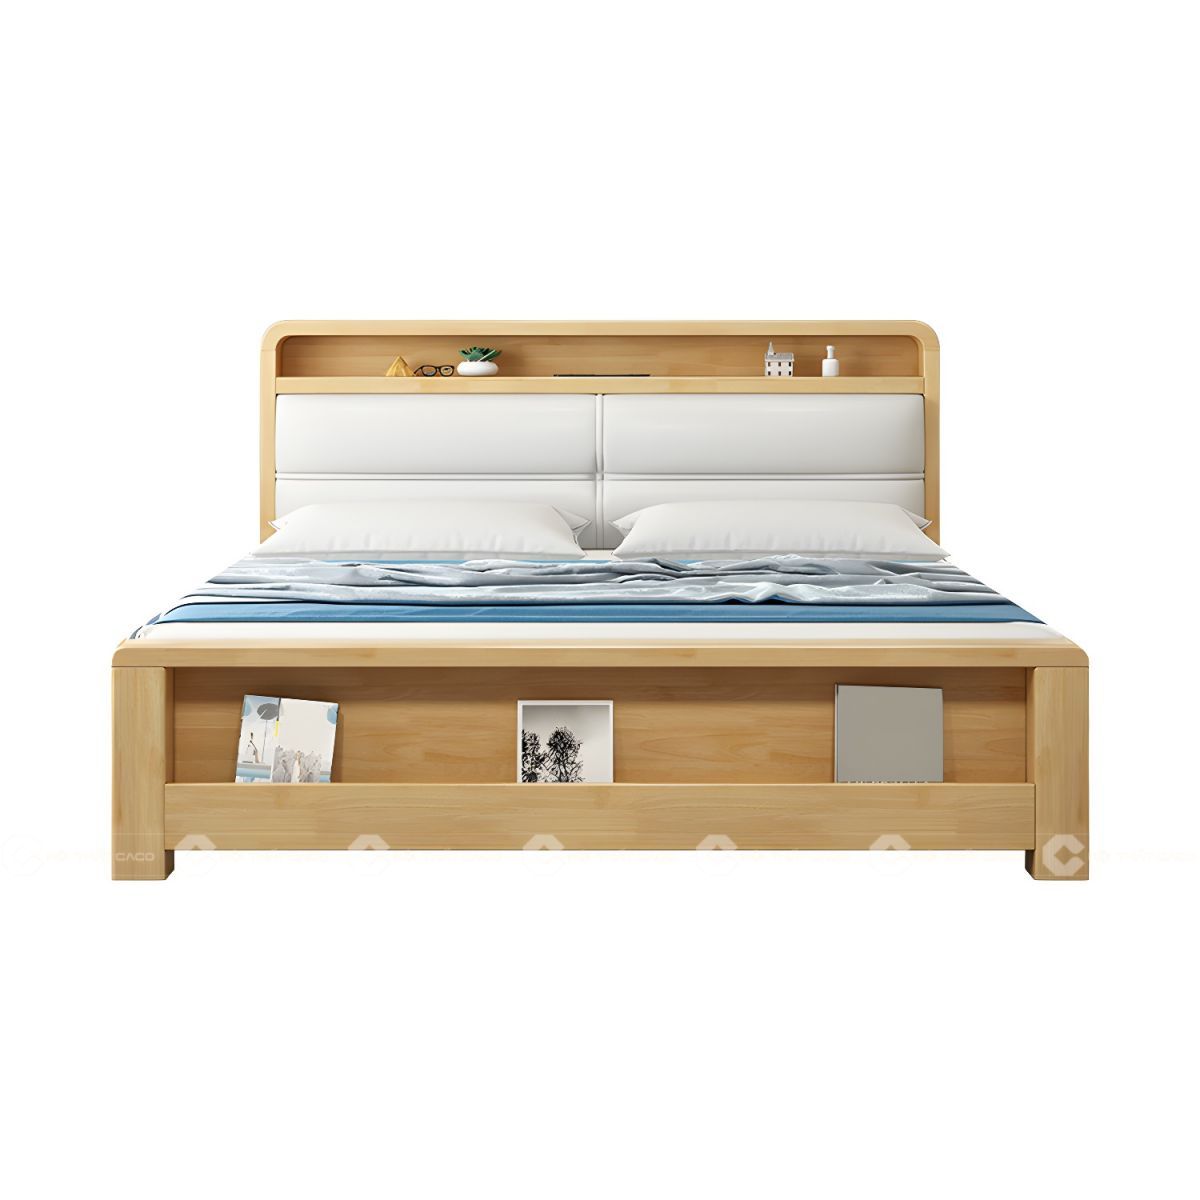 Giường ngủ gỗ tự nhiên bọc nệm thanh lịch